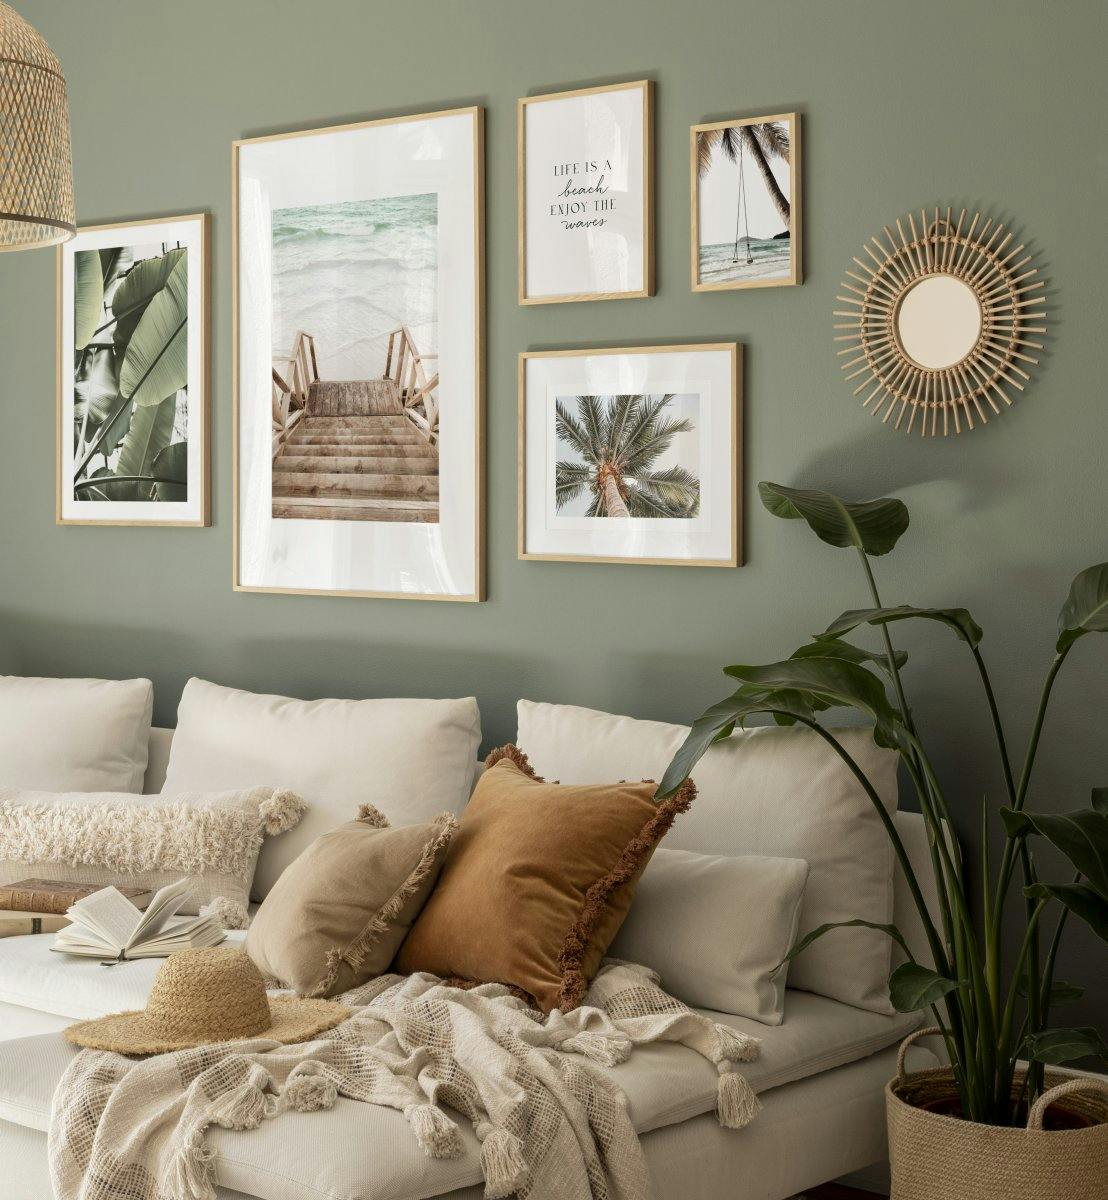 Décoration murale bohème verte et beige avec affiches nature et art photo pour la chambre